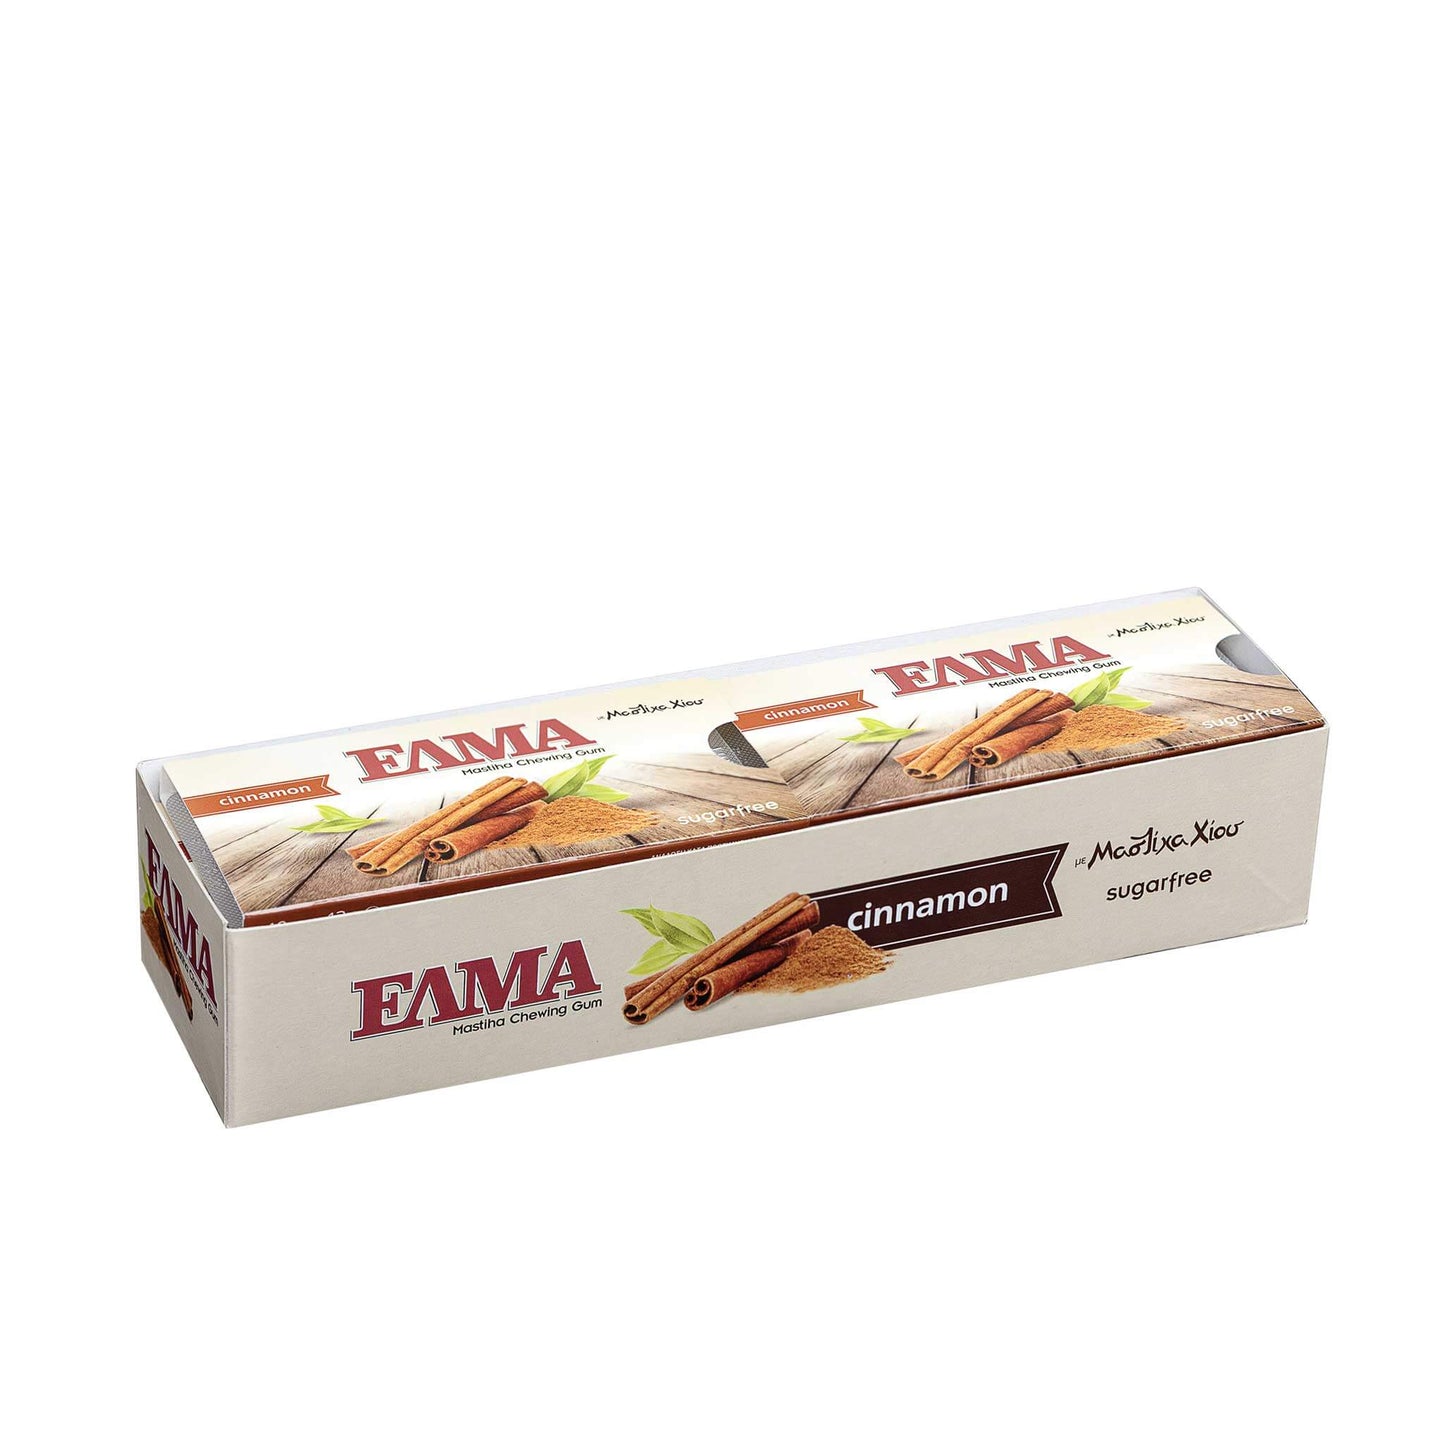 ELMA Zimt: mit Mastix, ohne Zucker (Box)